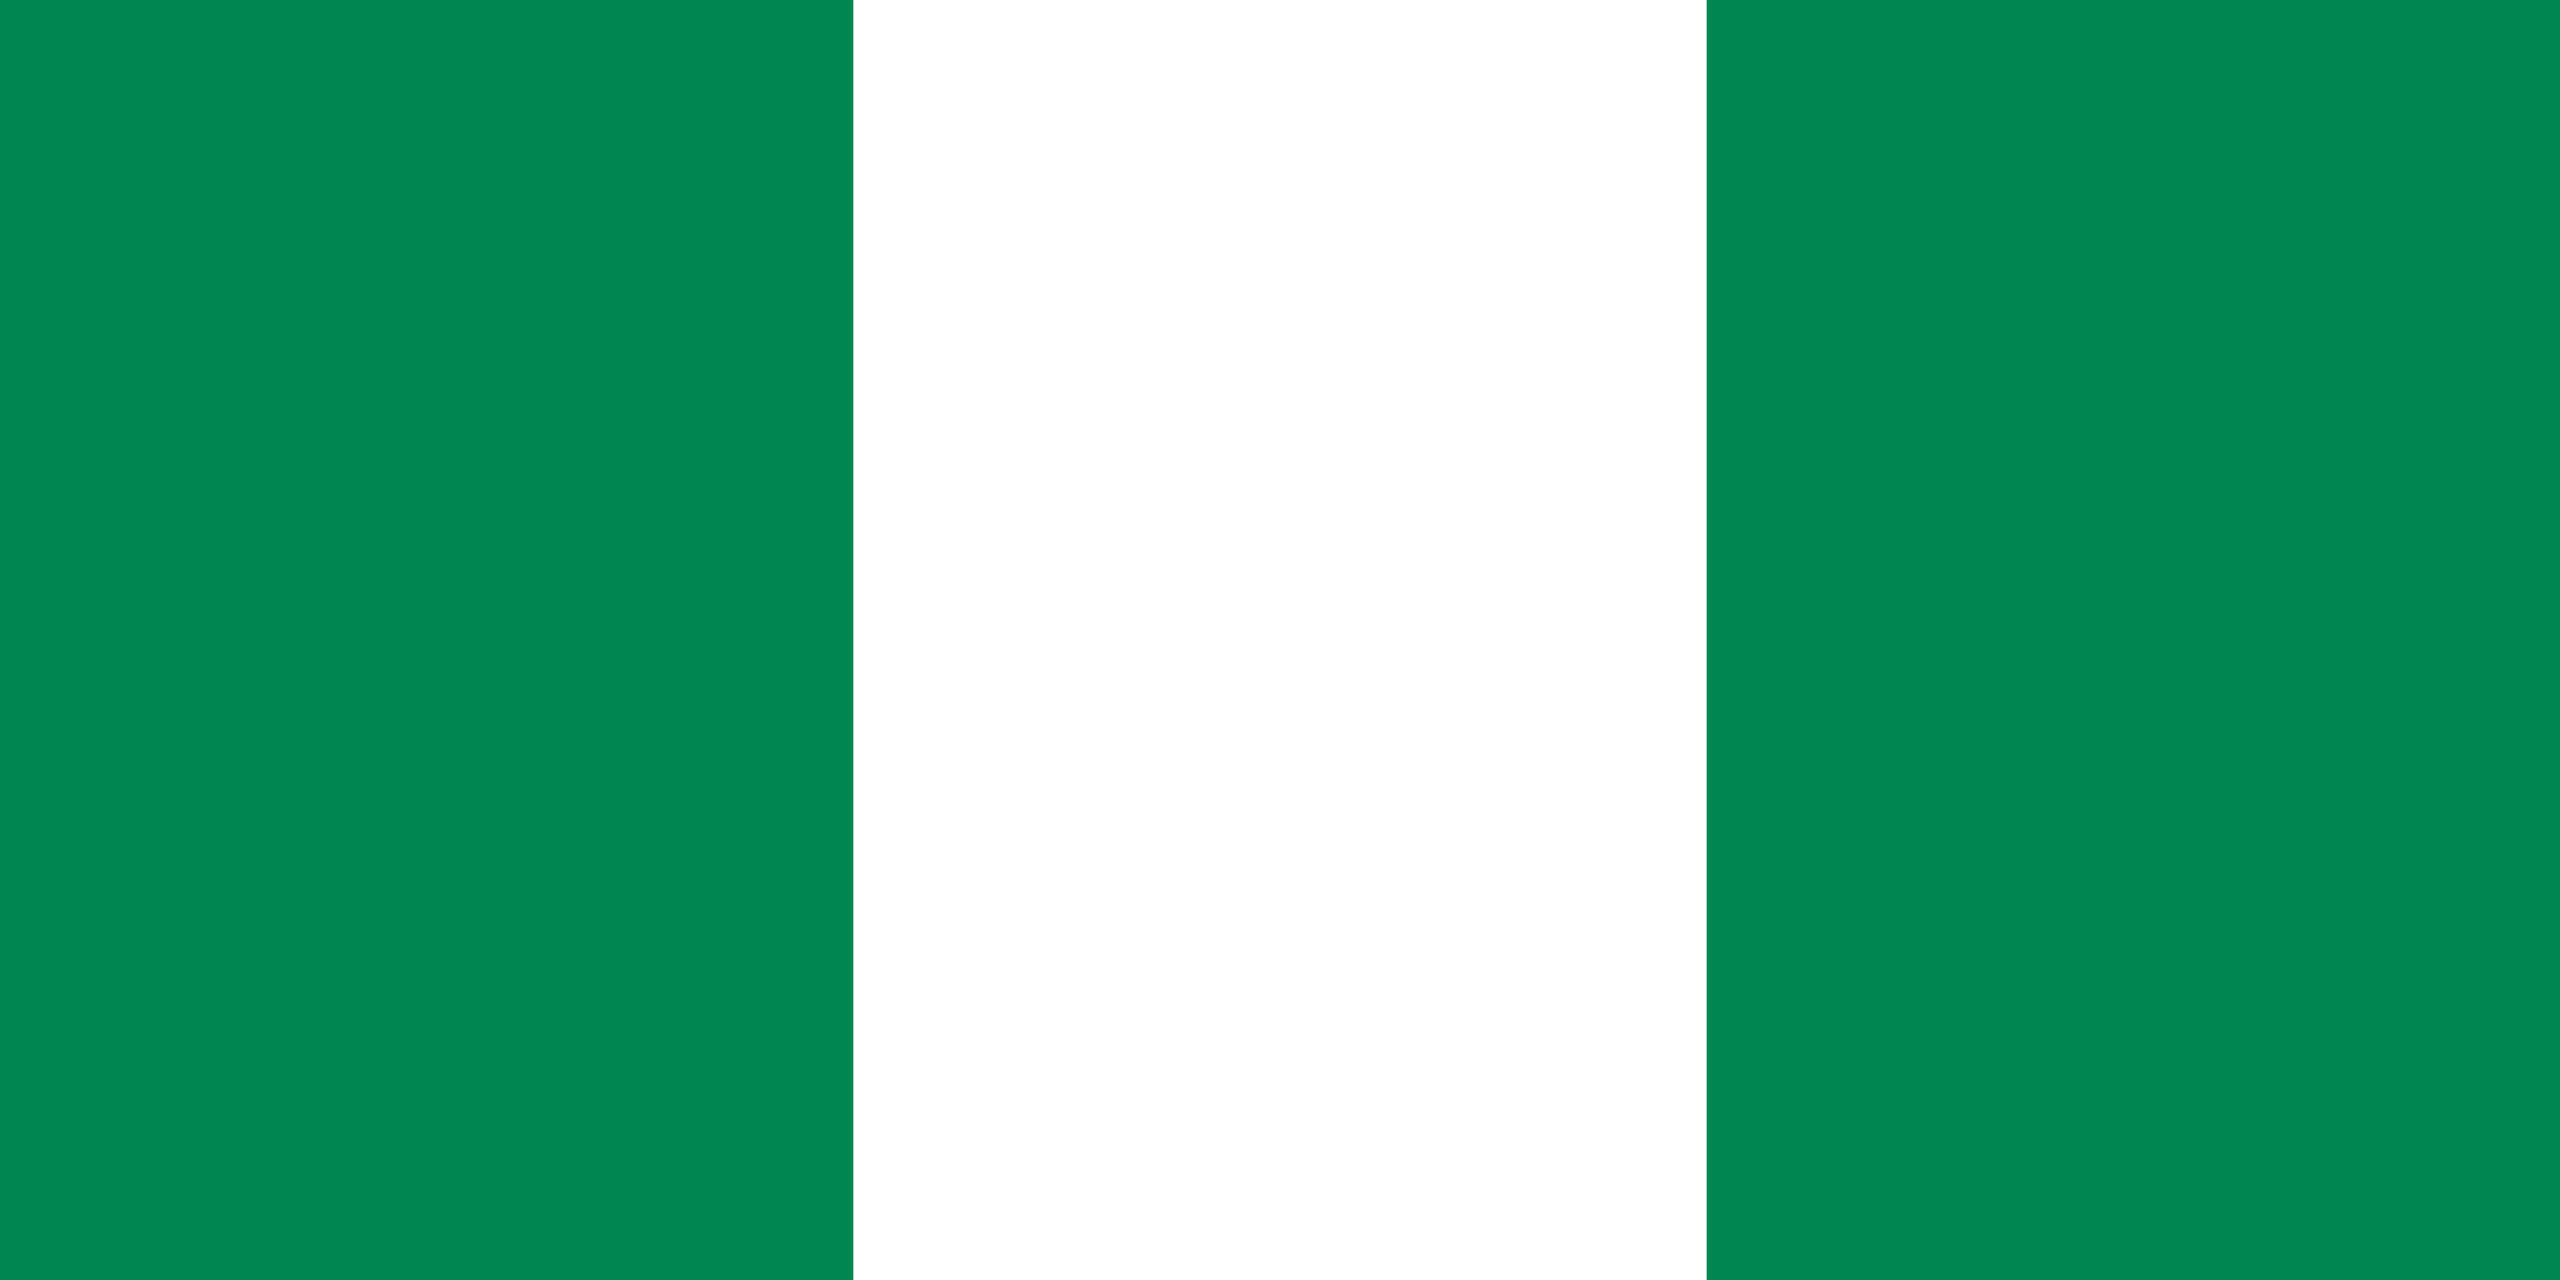 Nigeria's flag